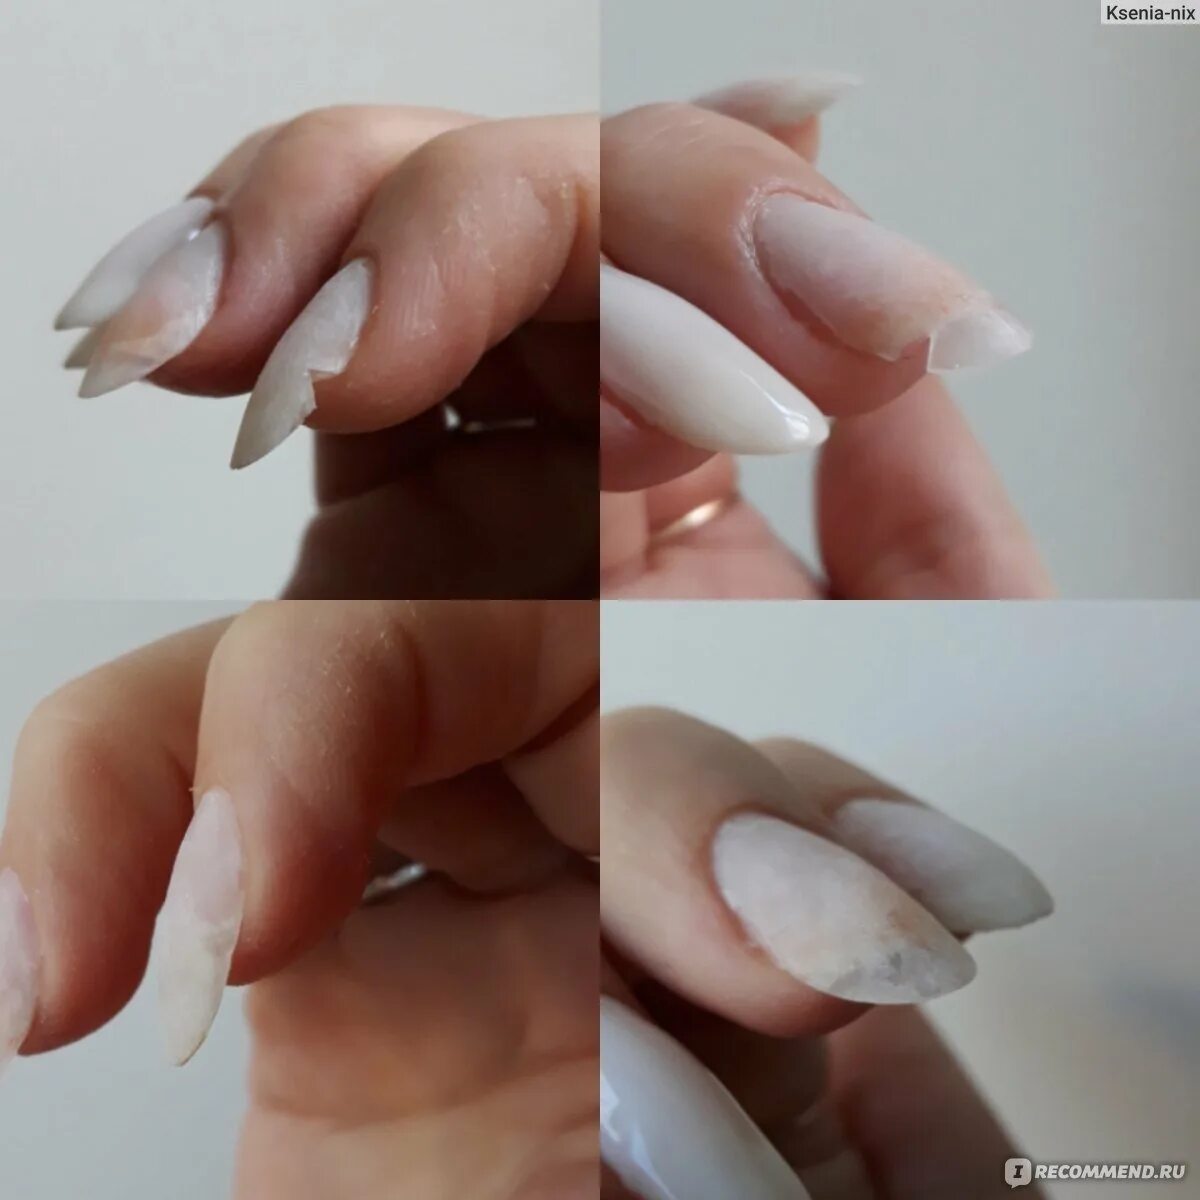 Полигелем можно нарастить ногти. Наращивание ногтей полигелем. Поле гель для наращивания ногтей. Нарощенные ногти полигелем. Полигелем укрепление и наращивание ногтей.